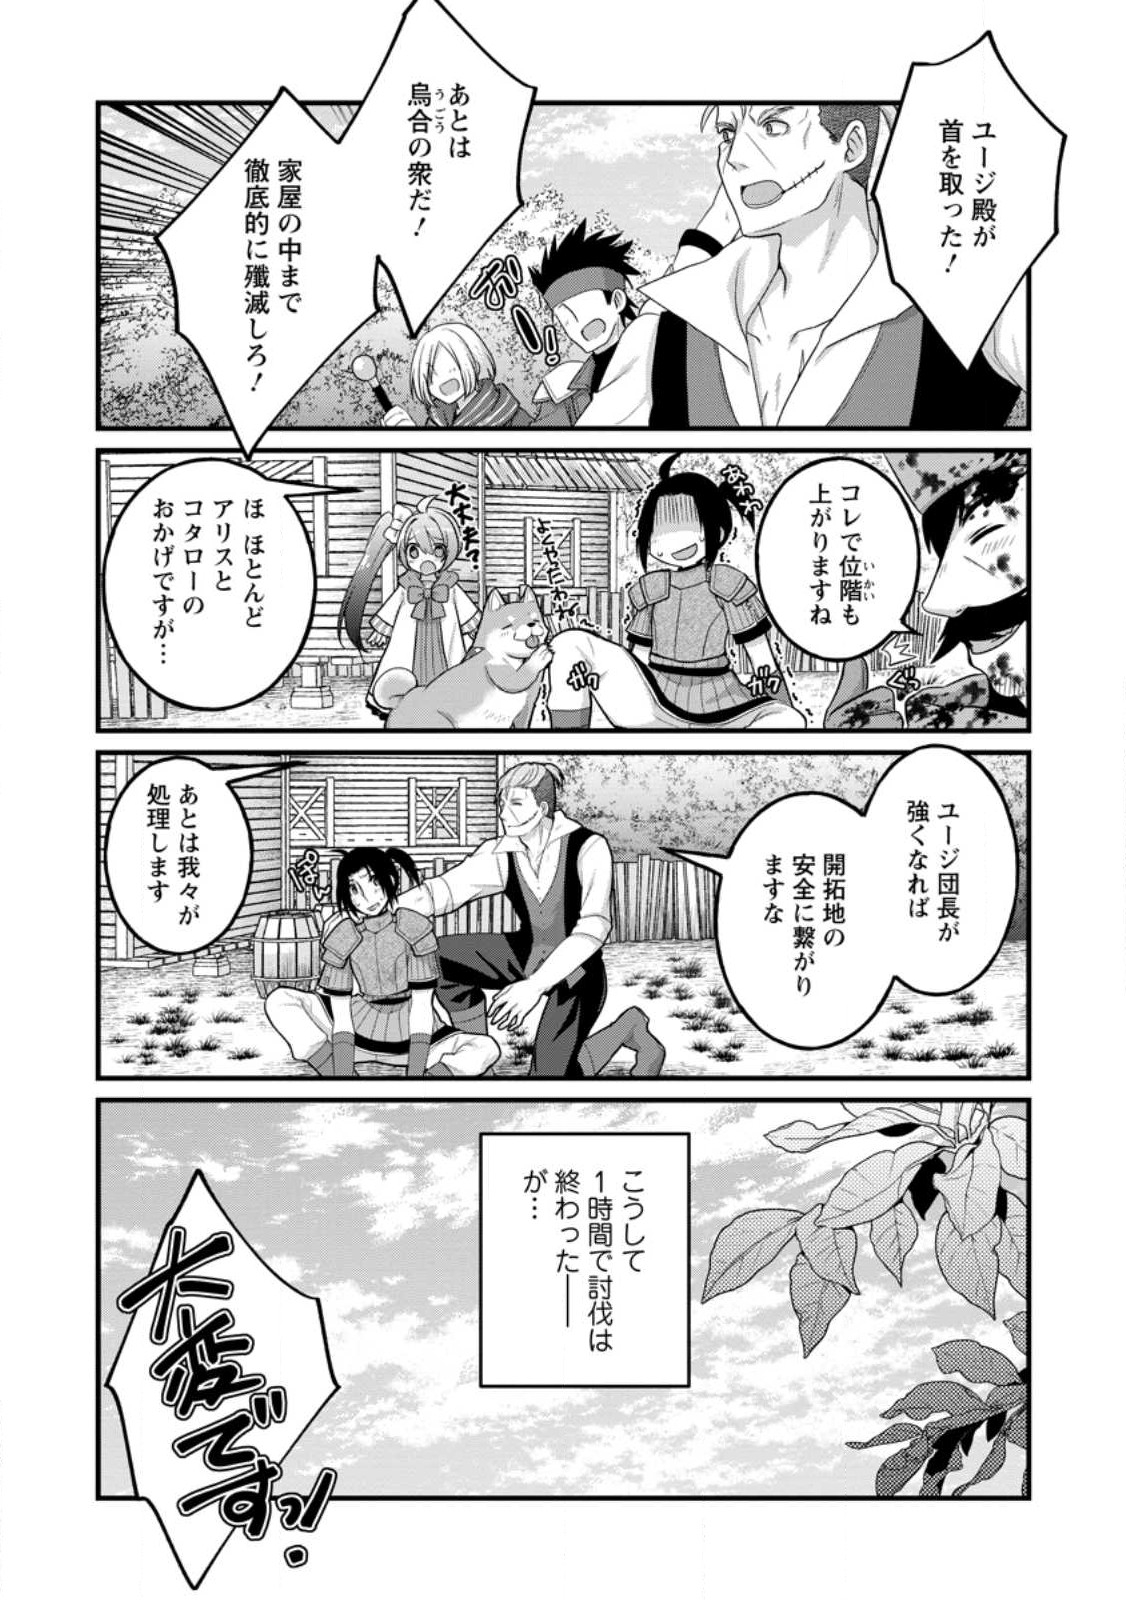 10-nen Goshi no HikiNEET wo Yamete Gaishutsu shitara Jitakugo to Isekai ni Tenishiteta - Chapter 12.3 - Page 11